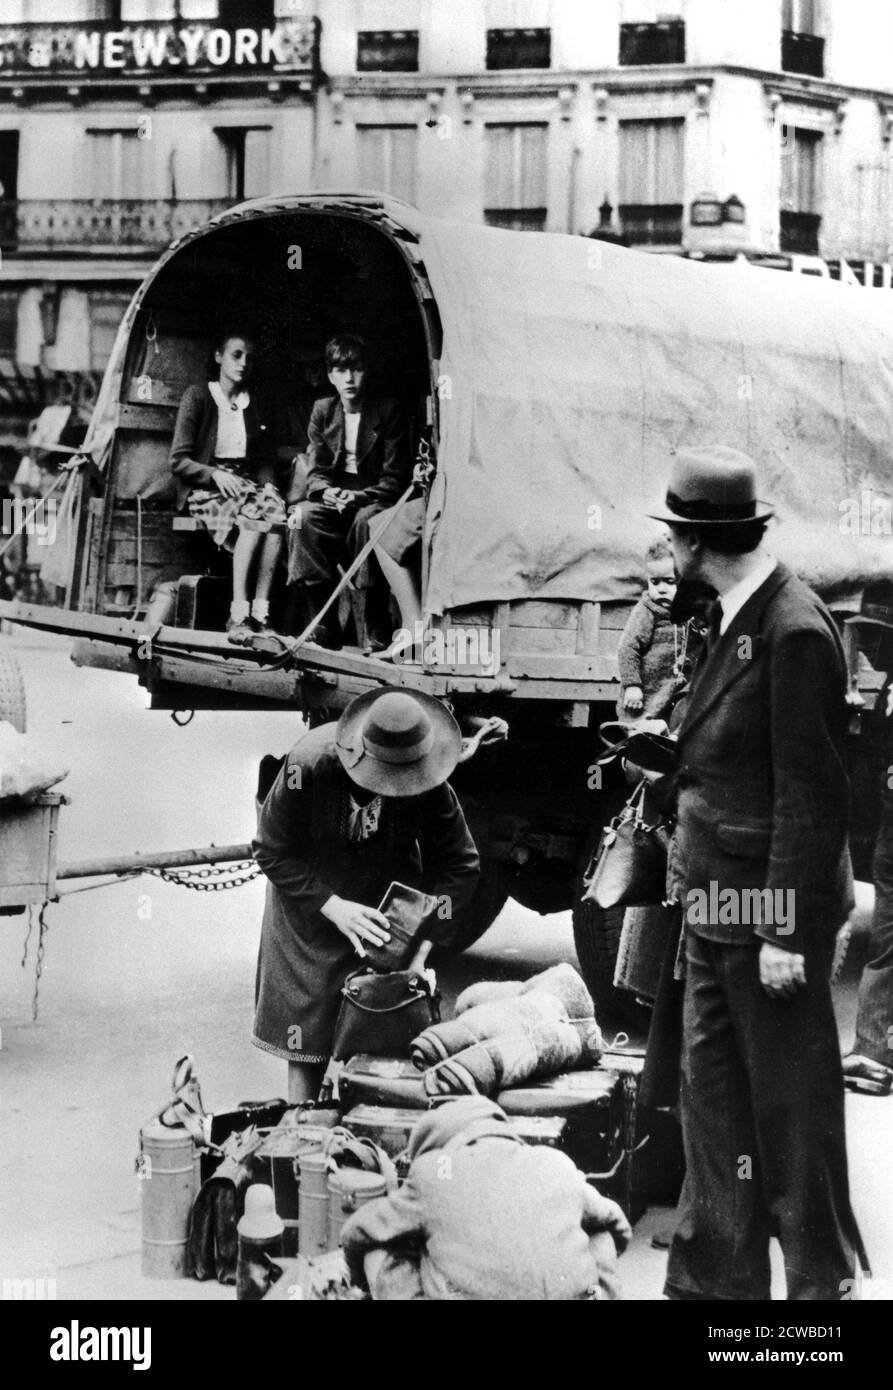 Flüchtlinge kehren nach Hause zurück, Paris, Juli 1940. Menschen, die nach der Niederlage Frankreichs aus den deutschen Invasoren in ihre Heimat zurückgekehrt waren. Der Fotograf ist unbekannt. Stockfoto